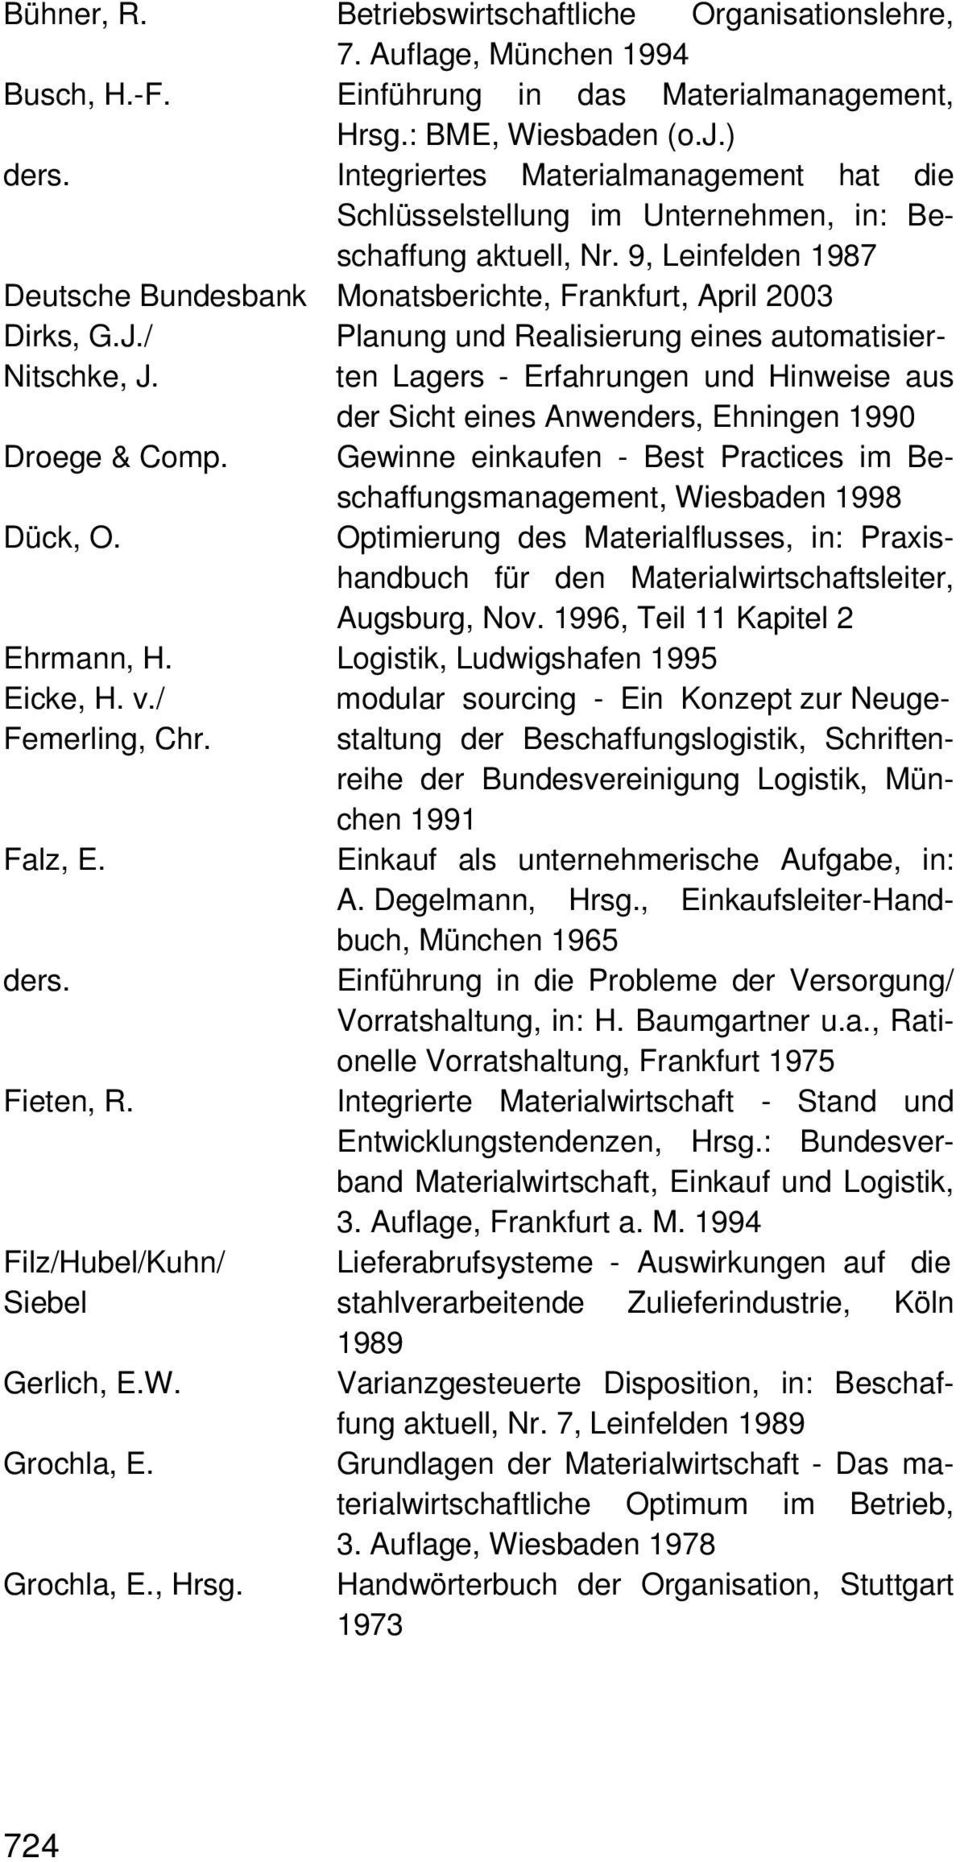 / Planung und Realisierung eines automatisier- Nitschke, J. ten Lagers - Erfahrungen und Hinweise aus der Sicht eines Anwenders, Ehningen 1990 Droege & Comp.